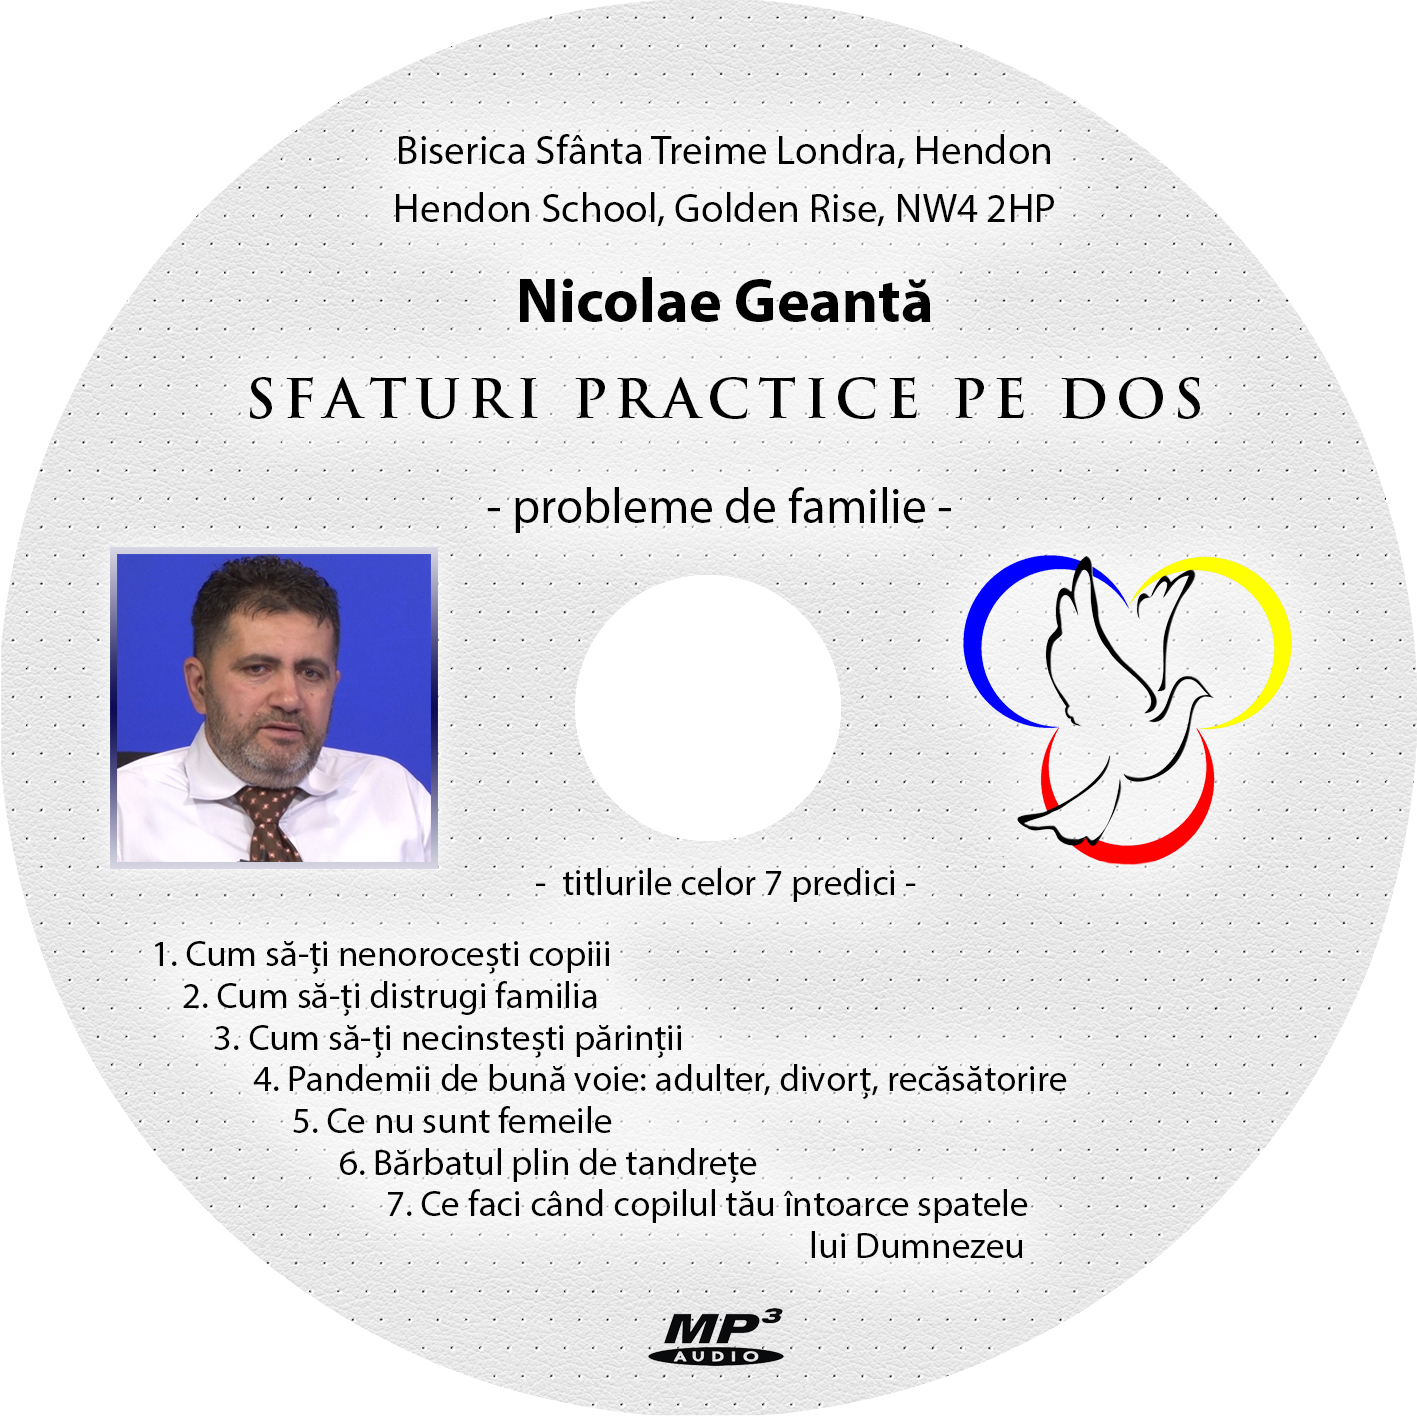 Nicolae Geantă - CD predici familie